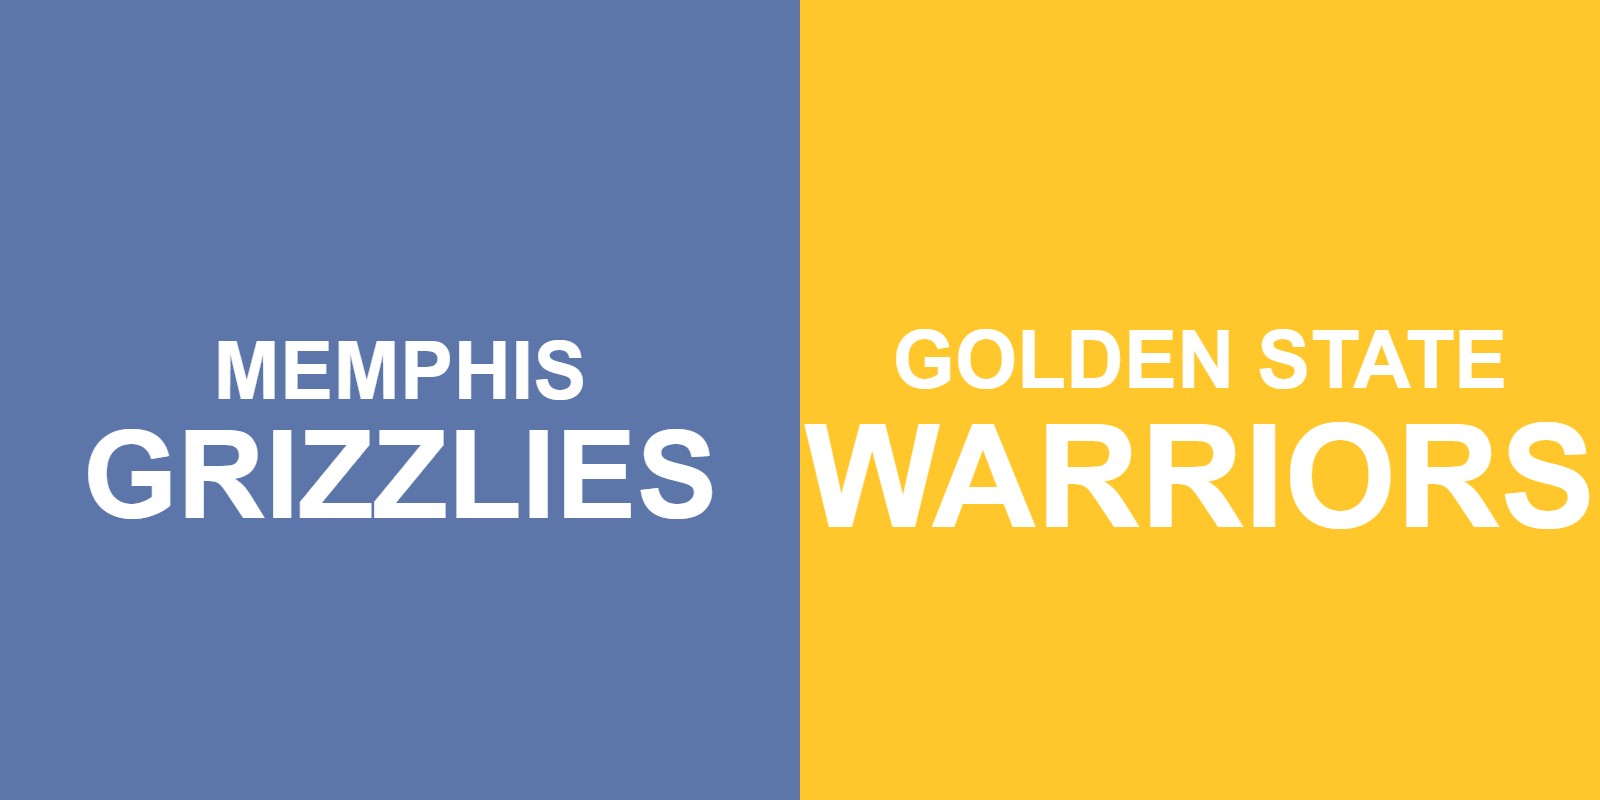 Grizzlies vs Warriors